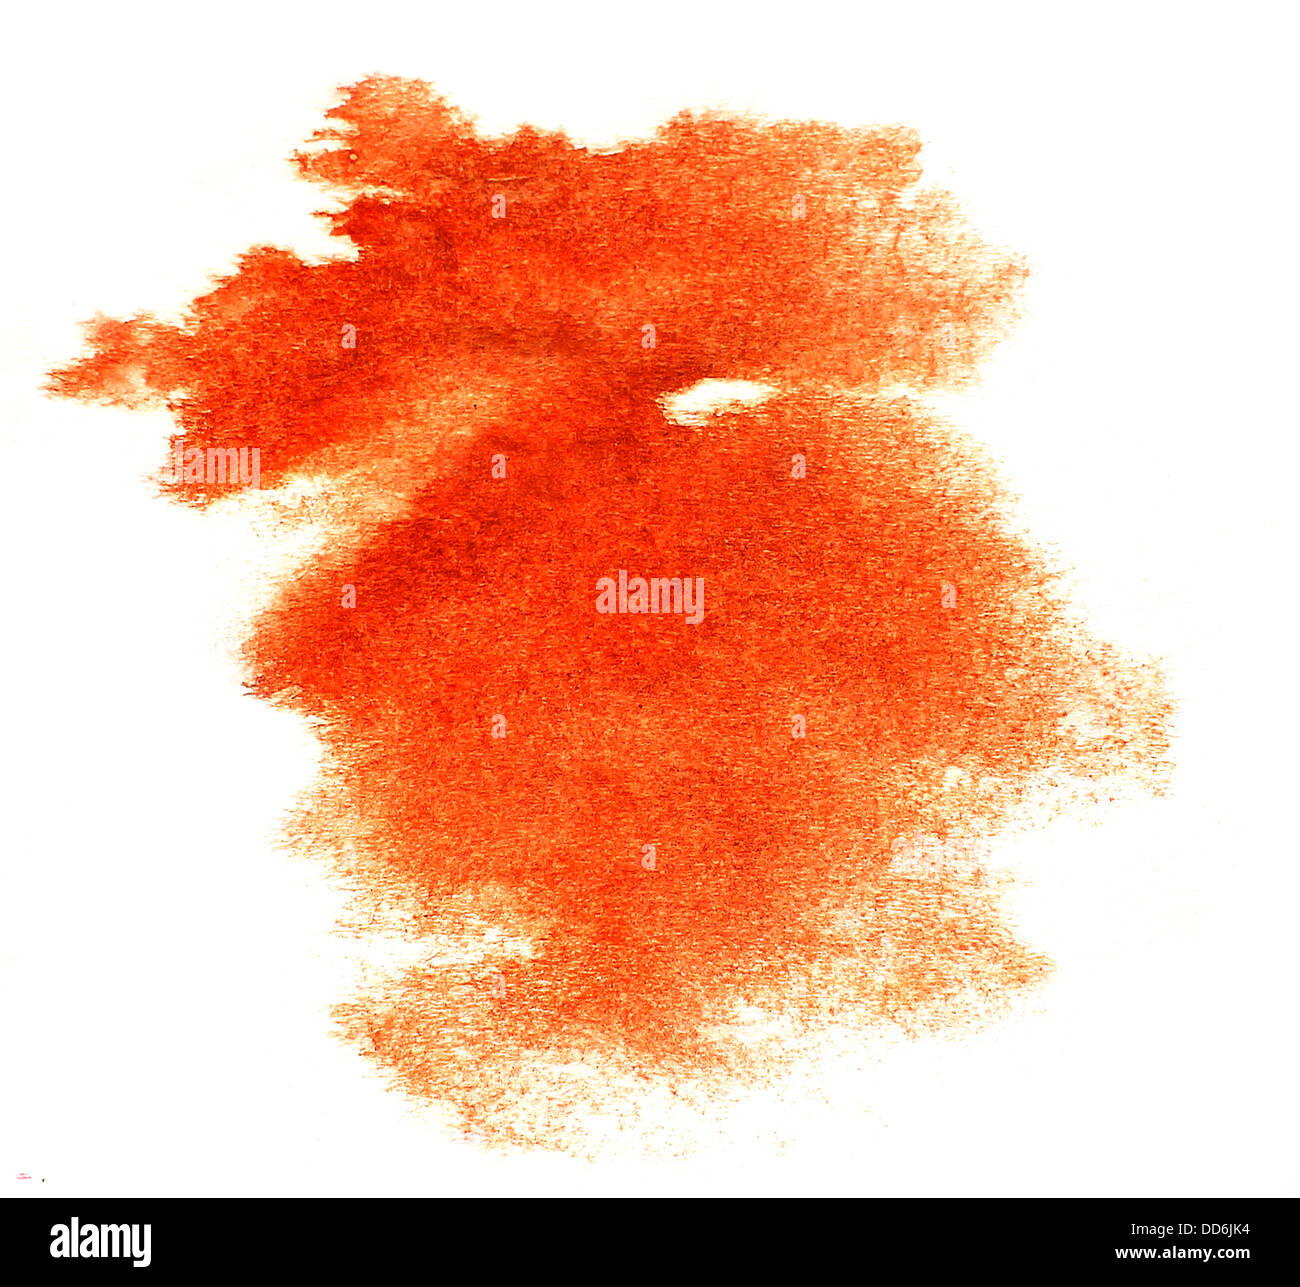 Orange d'encre aquarelle splatter splash grunge fond blot résumé splat texture spray art Banque D'Images